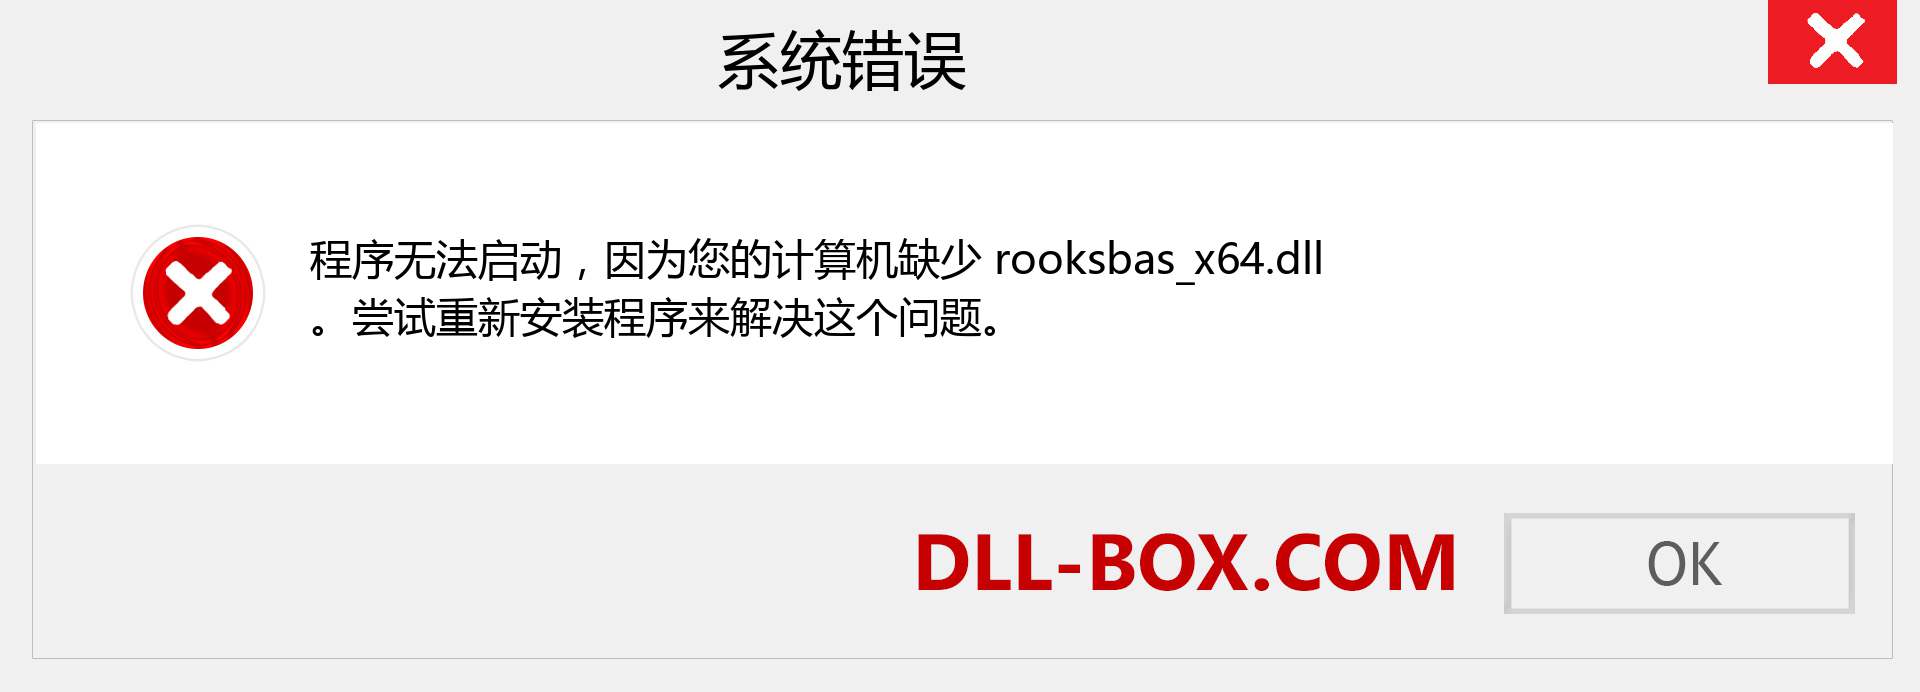 rooksbas_x64.dll 文件丢失？。 适用于 Windows 7、8、10 的下载 - 修复 Windows、照片、图像上的 rooksbas_x64 dll 丢失错误